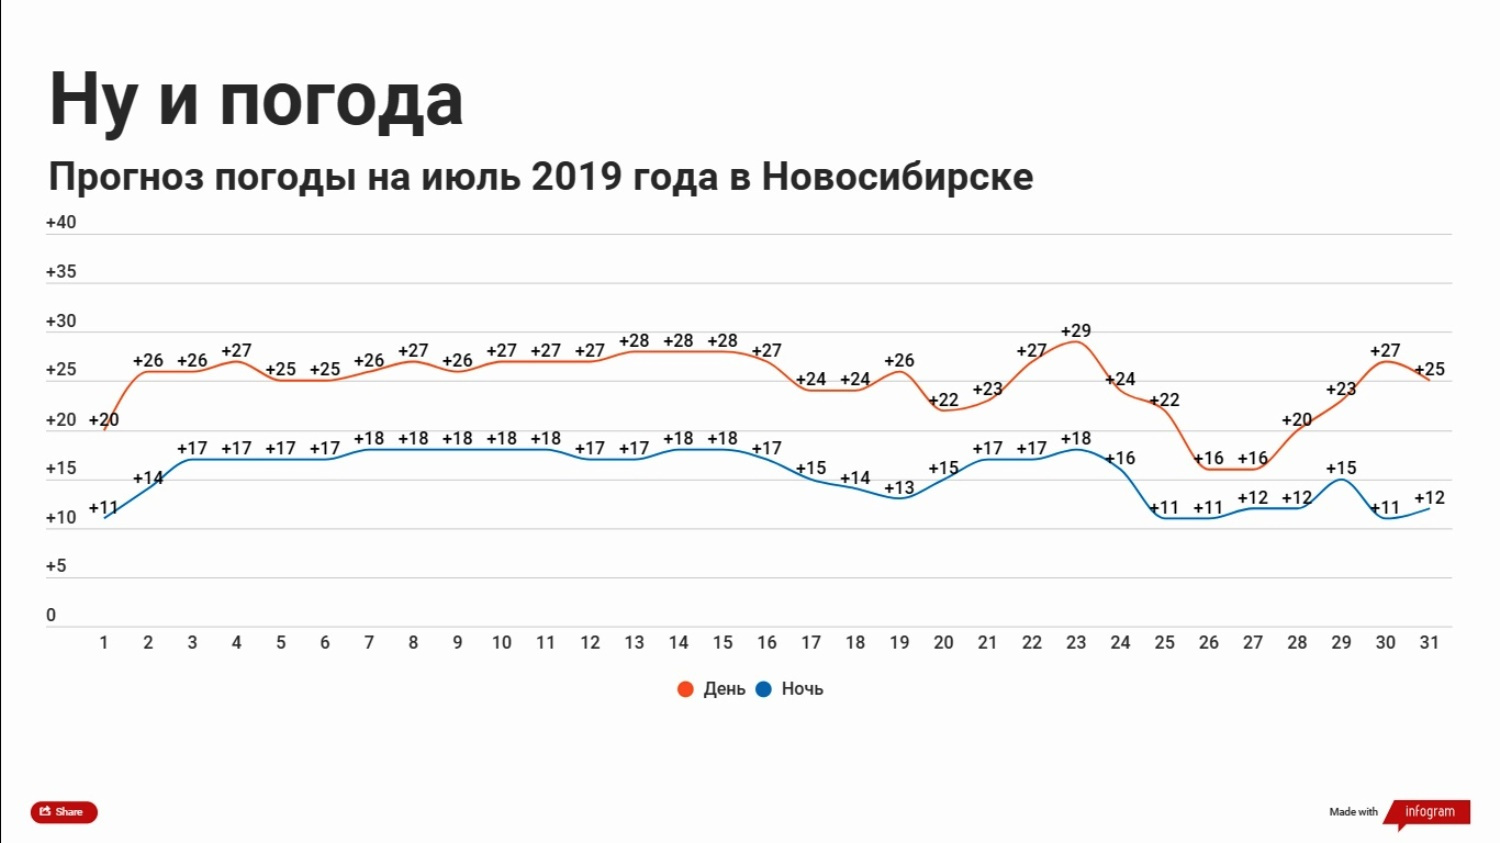 2019 году ожидается. Погода в Новосибирске. Прогноз. Статистика в прогнозе погоды. Прогноз погоды 2019.